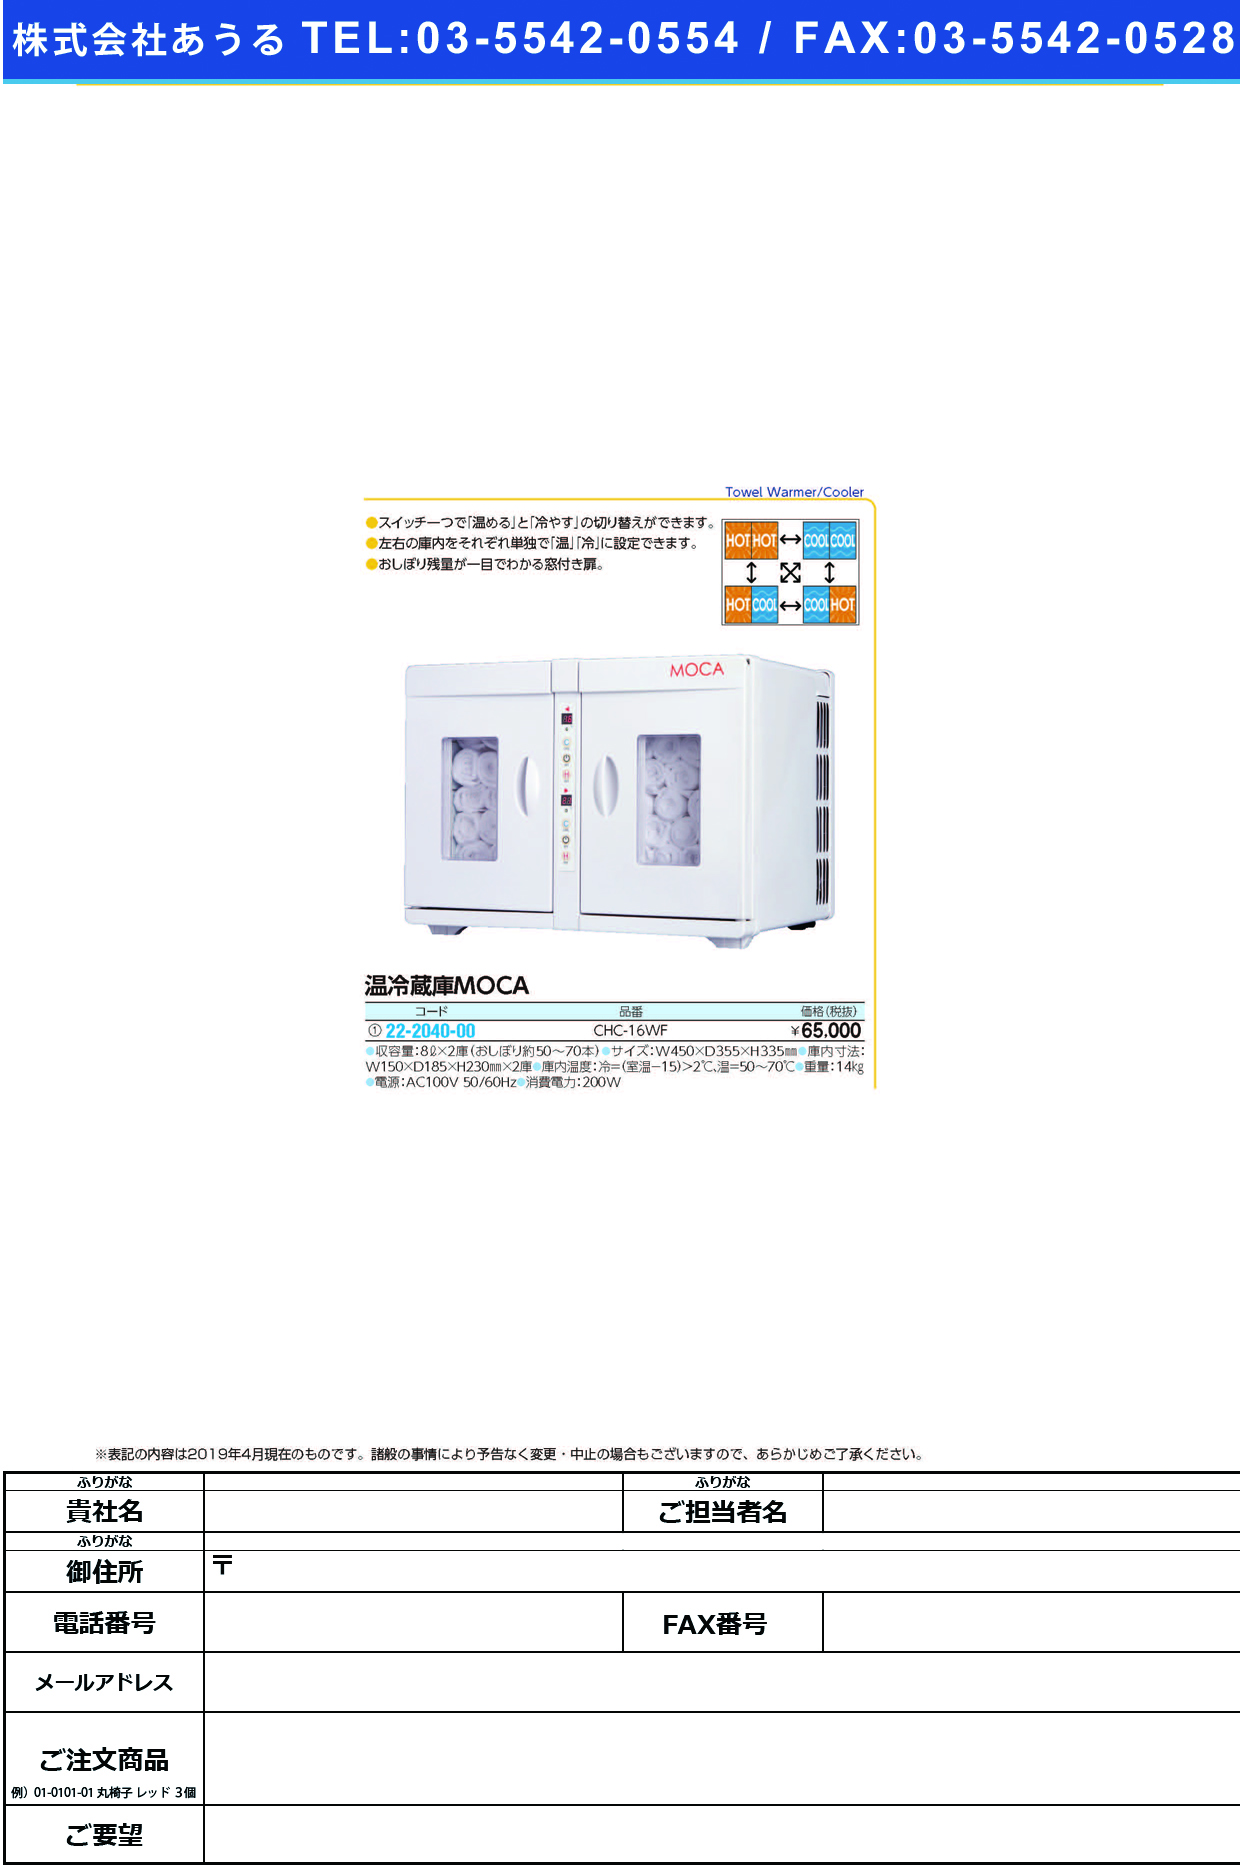 (22-2040-00)温冷蔵庫（ＭＯＣＡ） CHC-16WF ｵﾝﾚｲｿﾞｳｺMOCA【1台単位】【2019年カタログ商品】